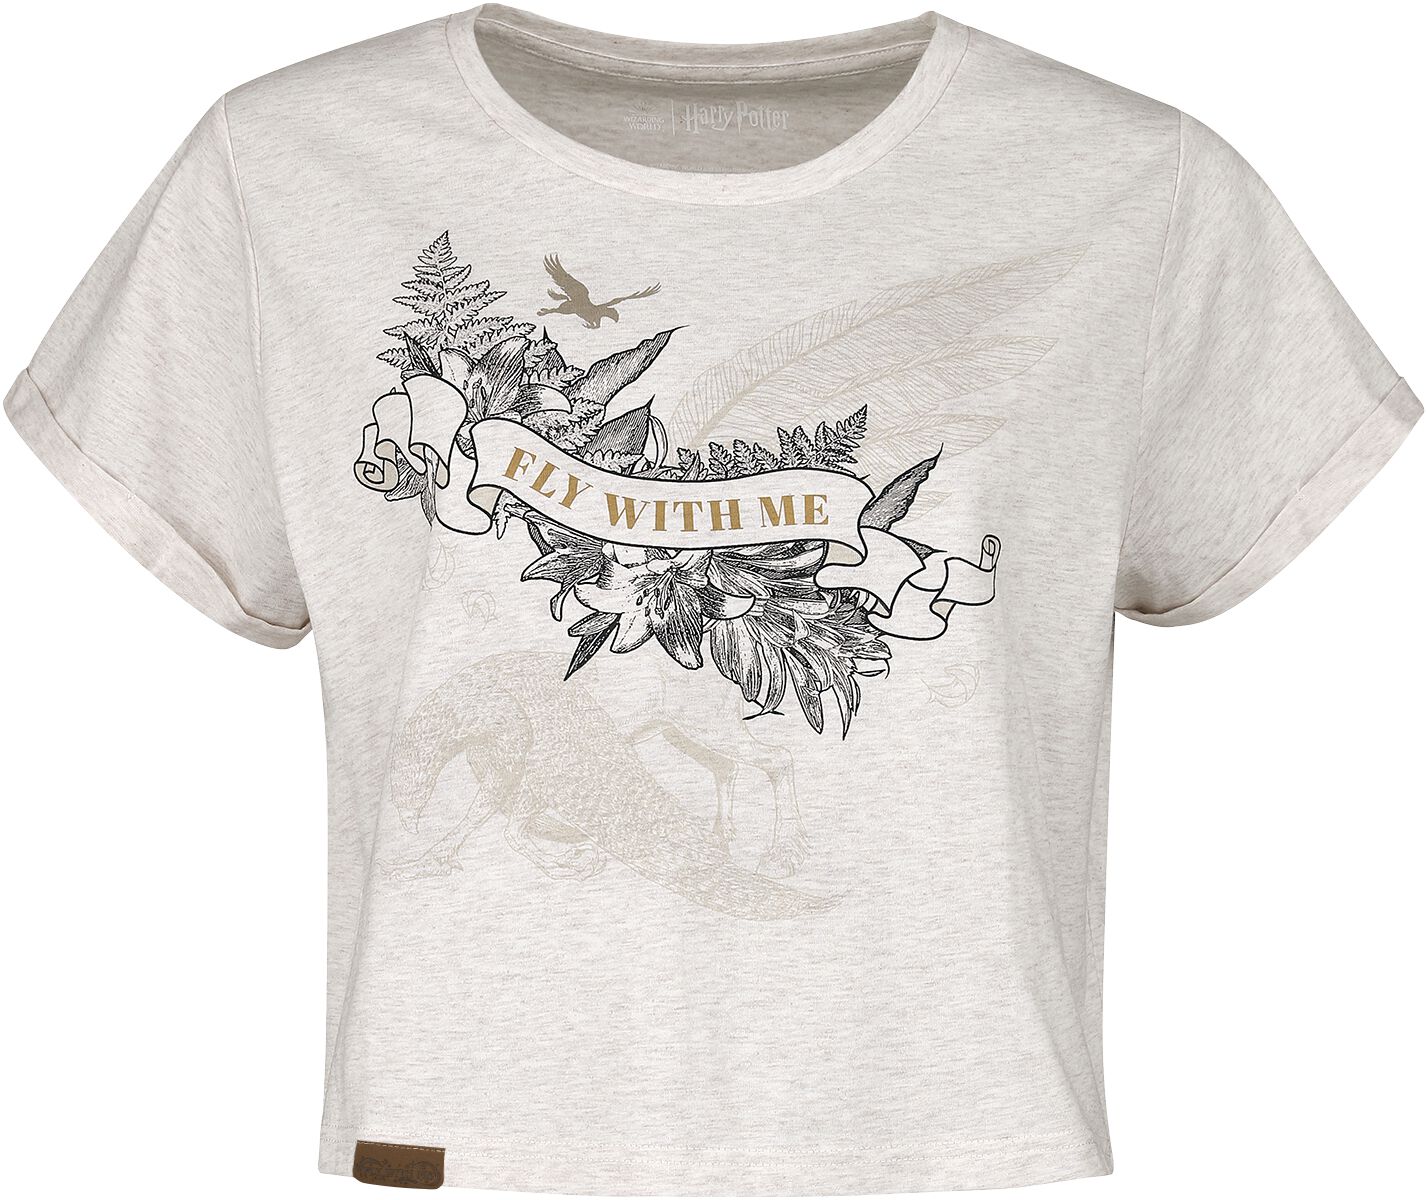 Harry Potter T-Shirt - Seidenschnabel (Buckbeak) - XL bis XXL - für Damen - Größe XL - creme meliert  - EMP exklusives Merchandise!